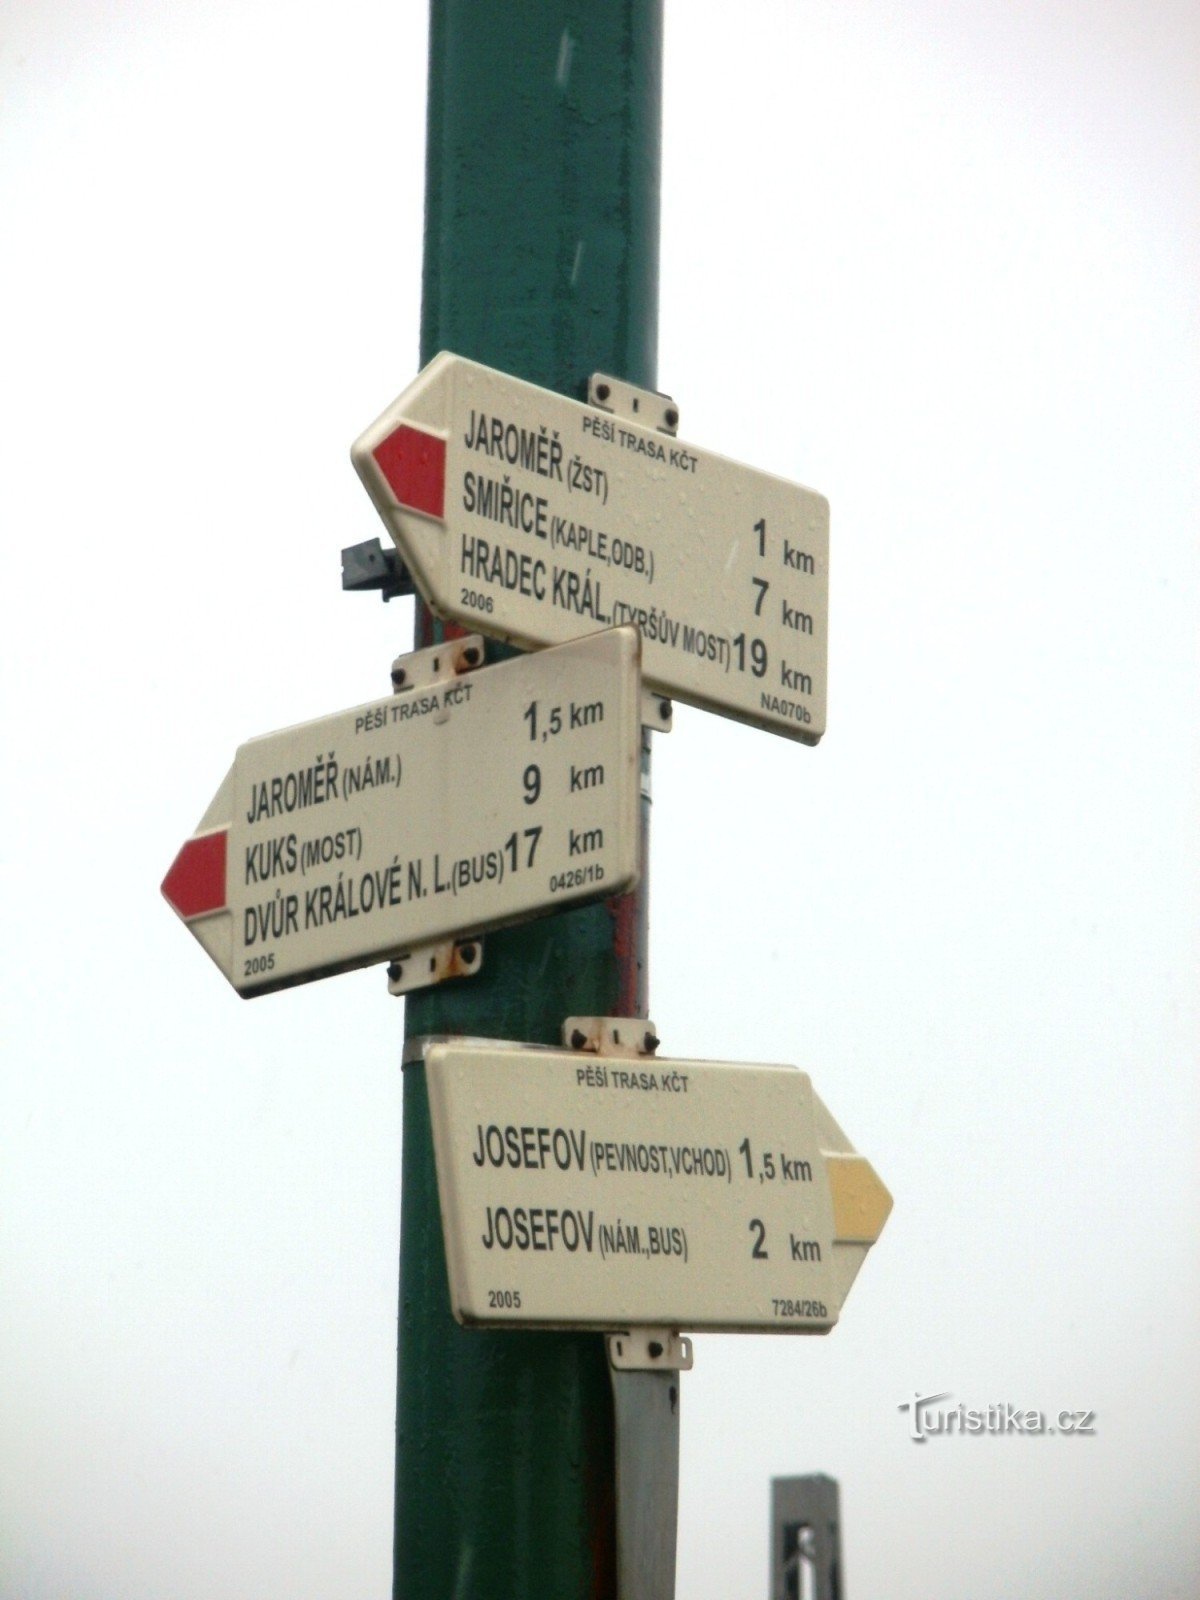 encruzilhada turística Jaroměř - no cruzamento ferroviário